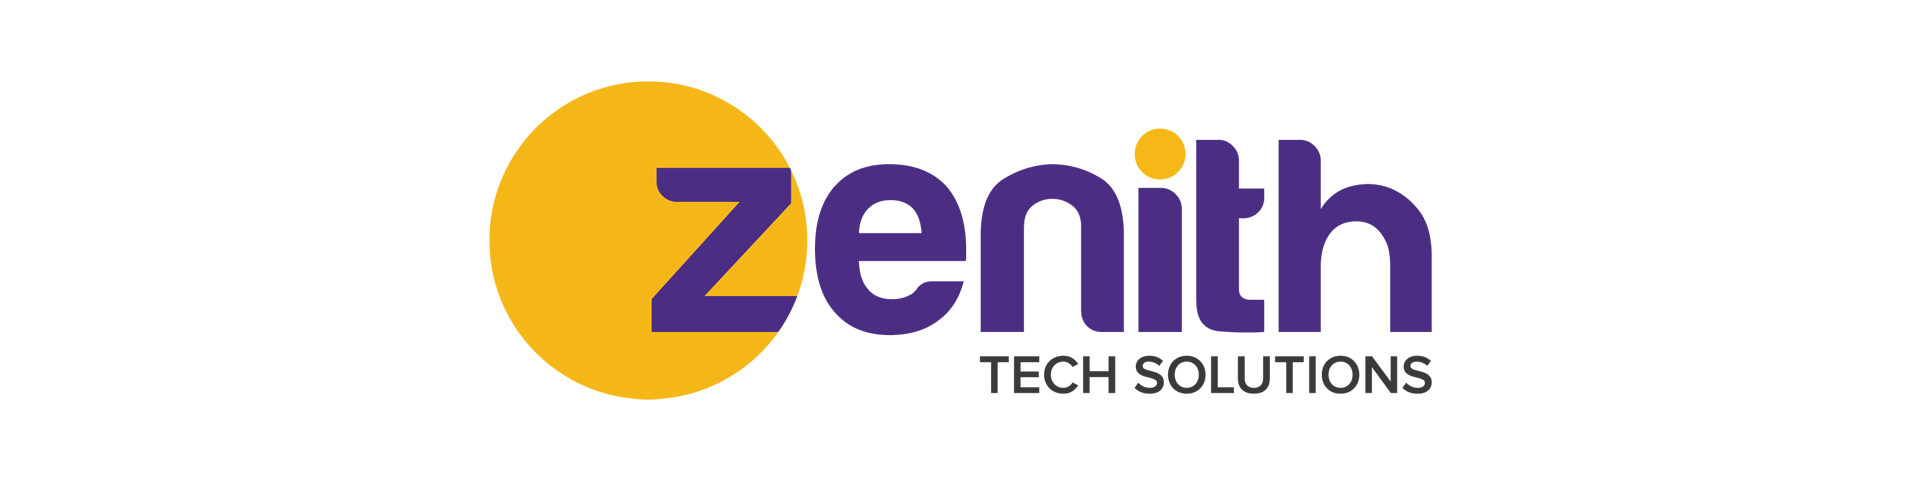 Zenith Tech Solutions